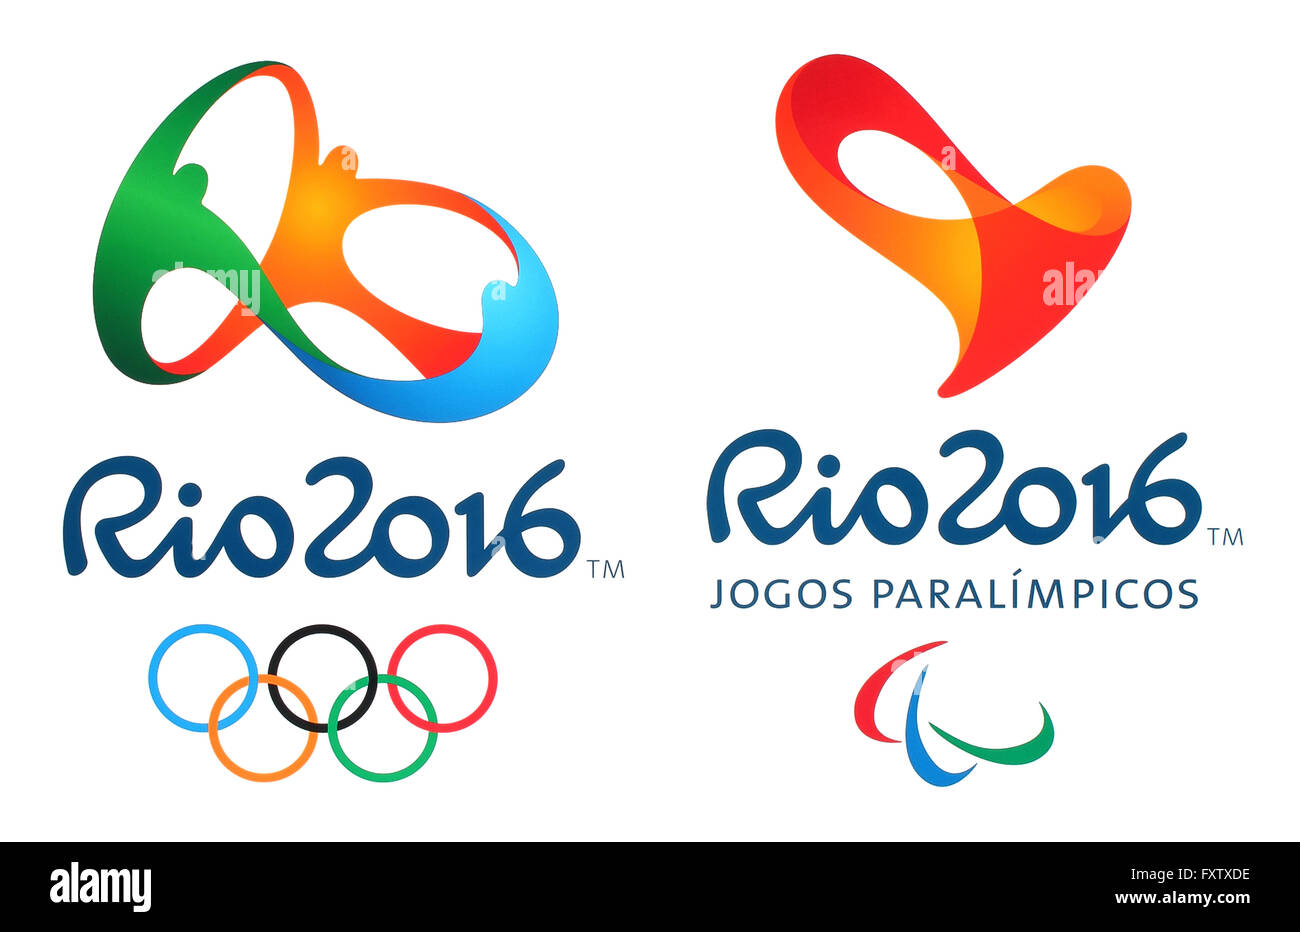 Offizielle Logos für die Olympischen Sommerspiele 2016 in Rio De Janeiro, Brasilien Stockfoto